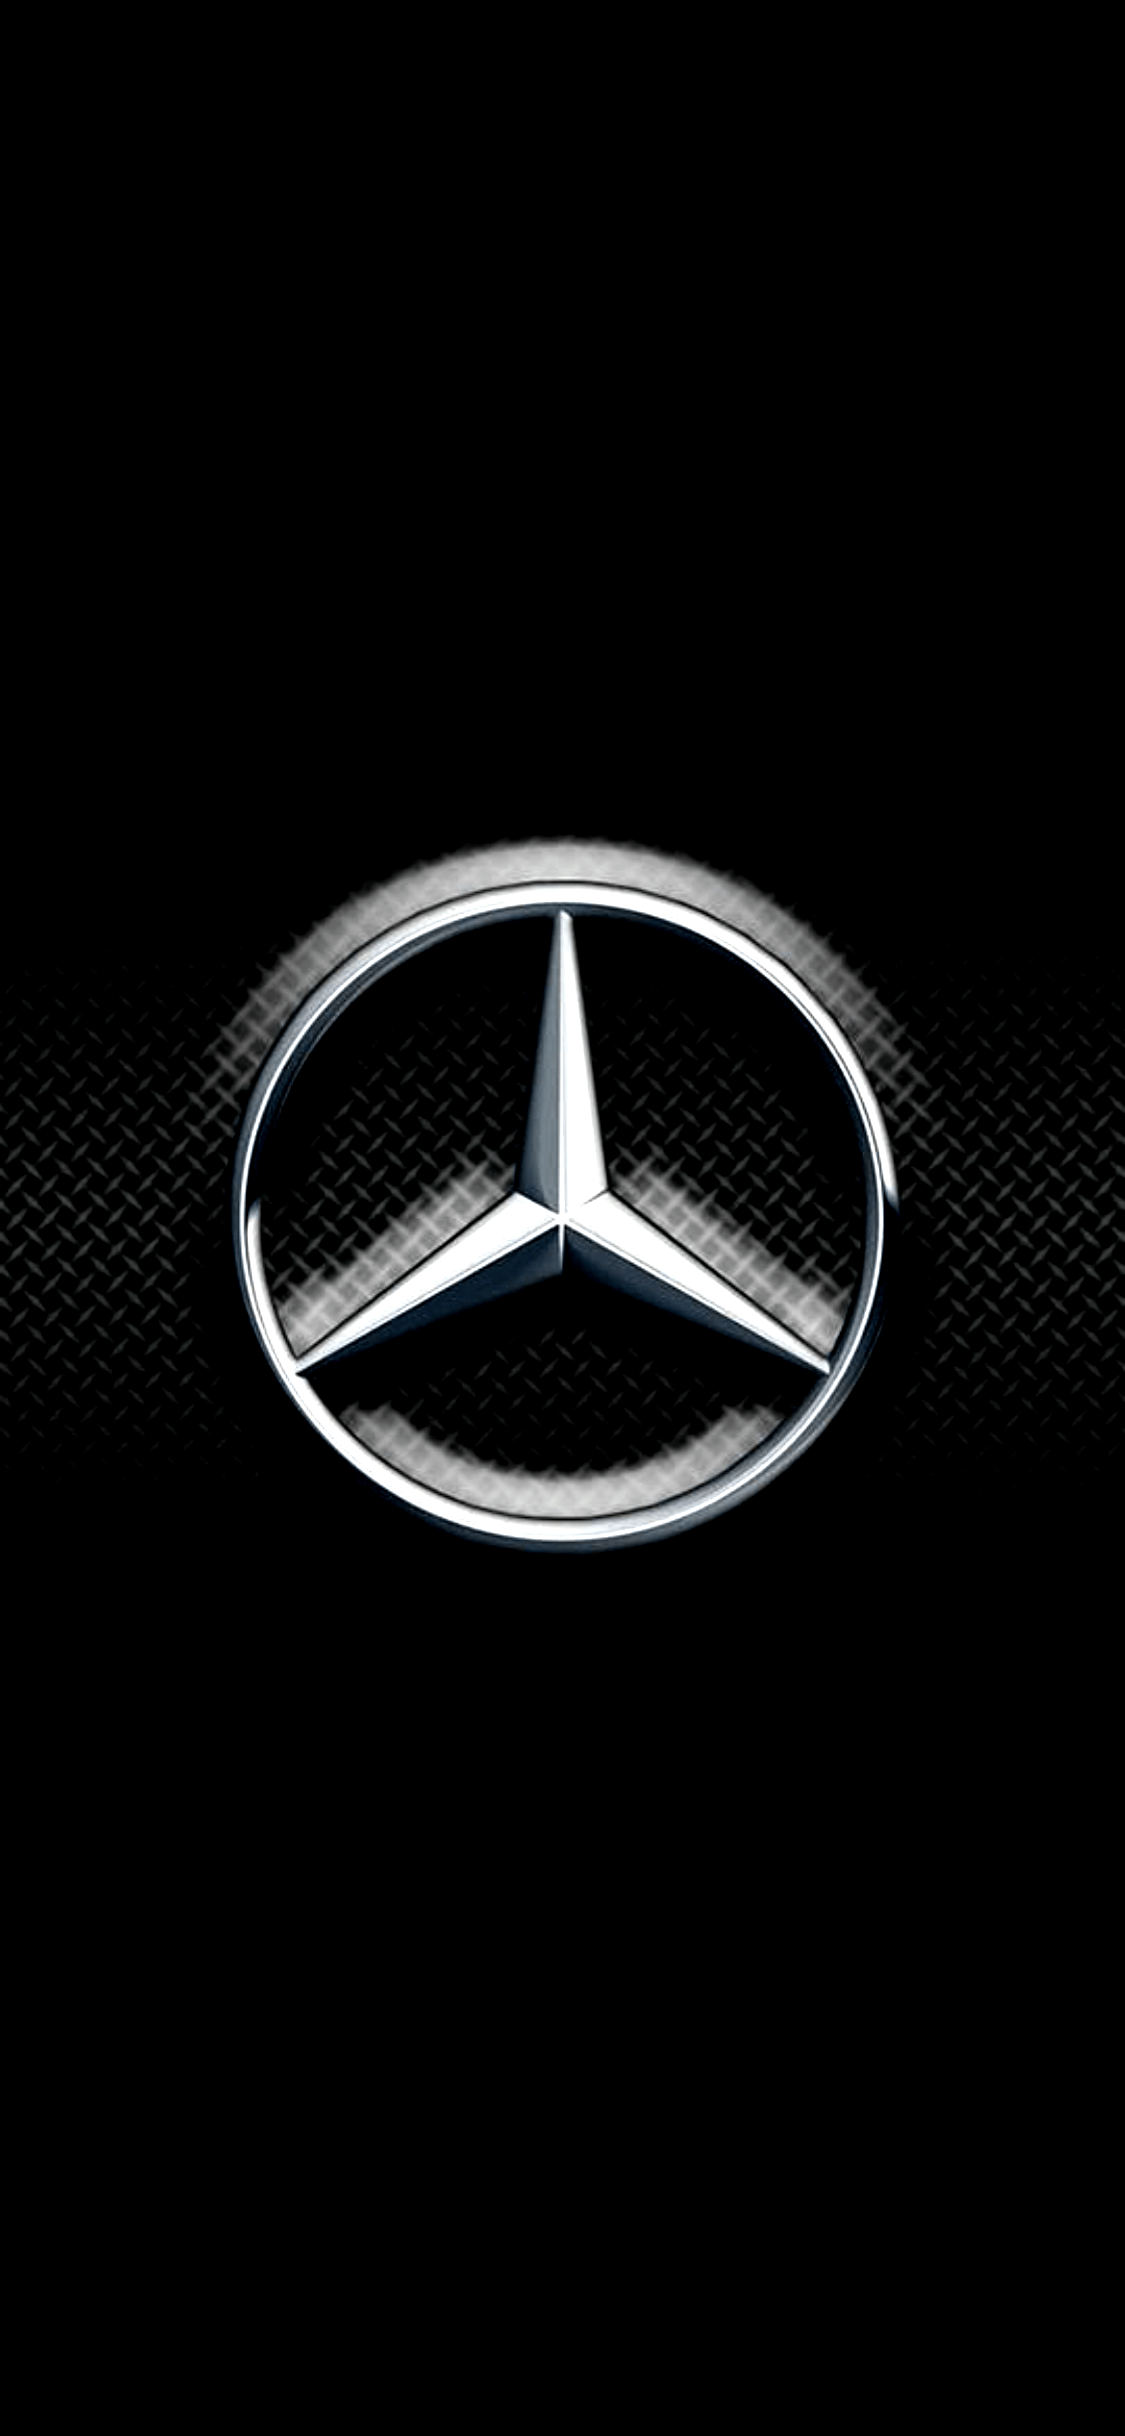 Xe Mercedes Benz AMG HD tải xuống hình nền